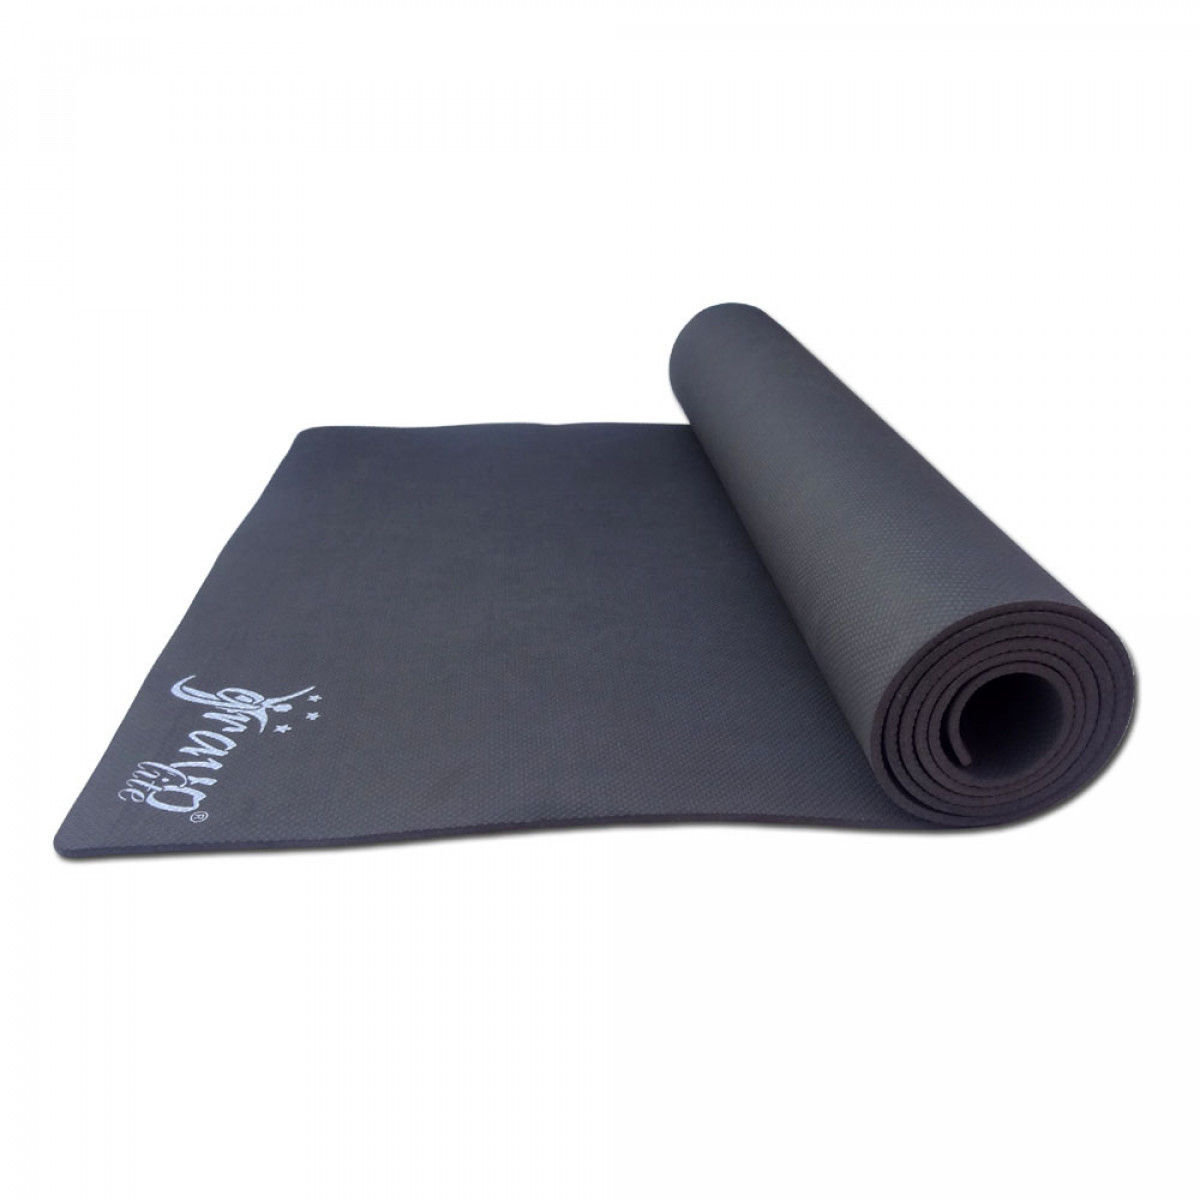 Yoga Mats - Premium (With Cover & Anti Skid Design)